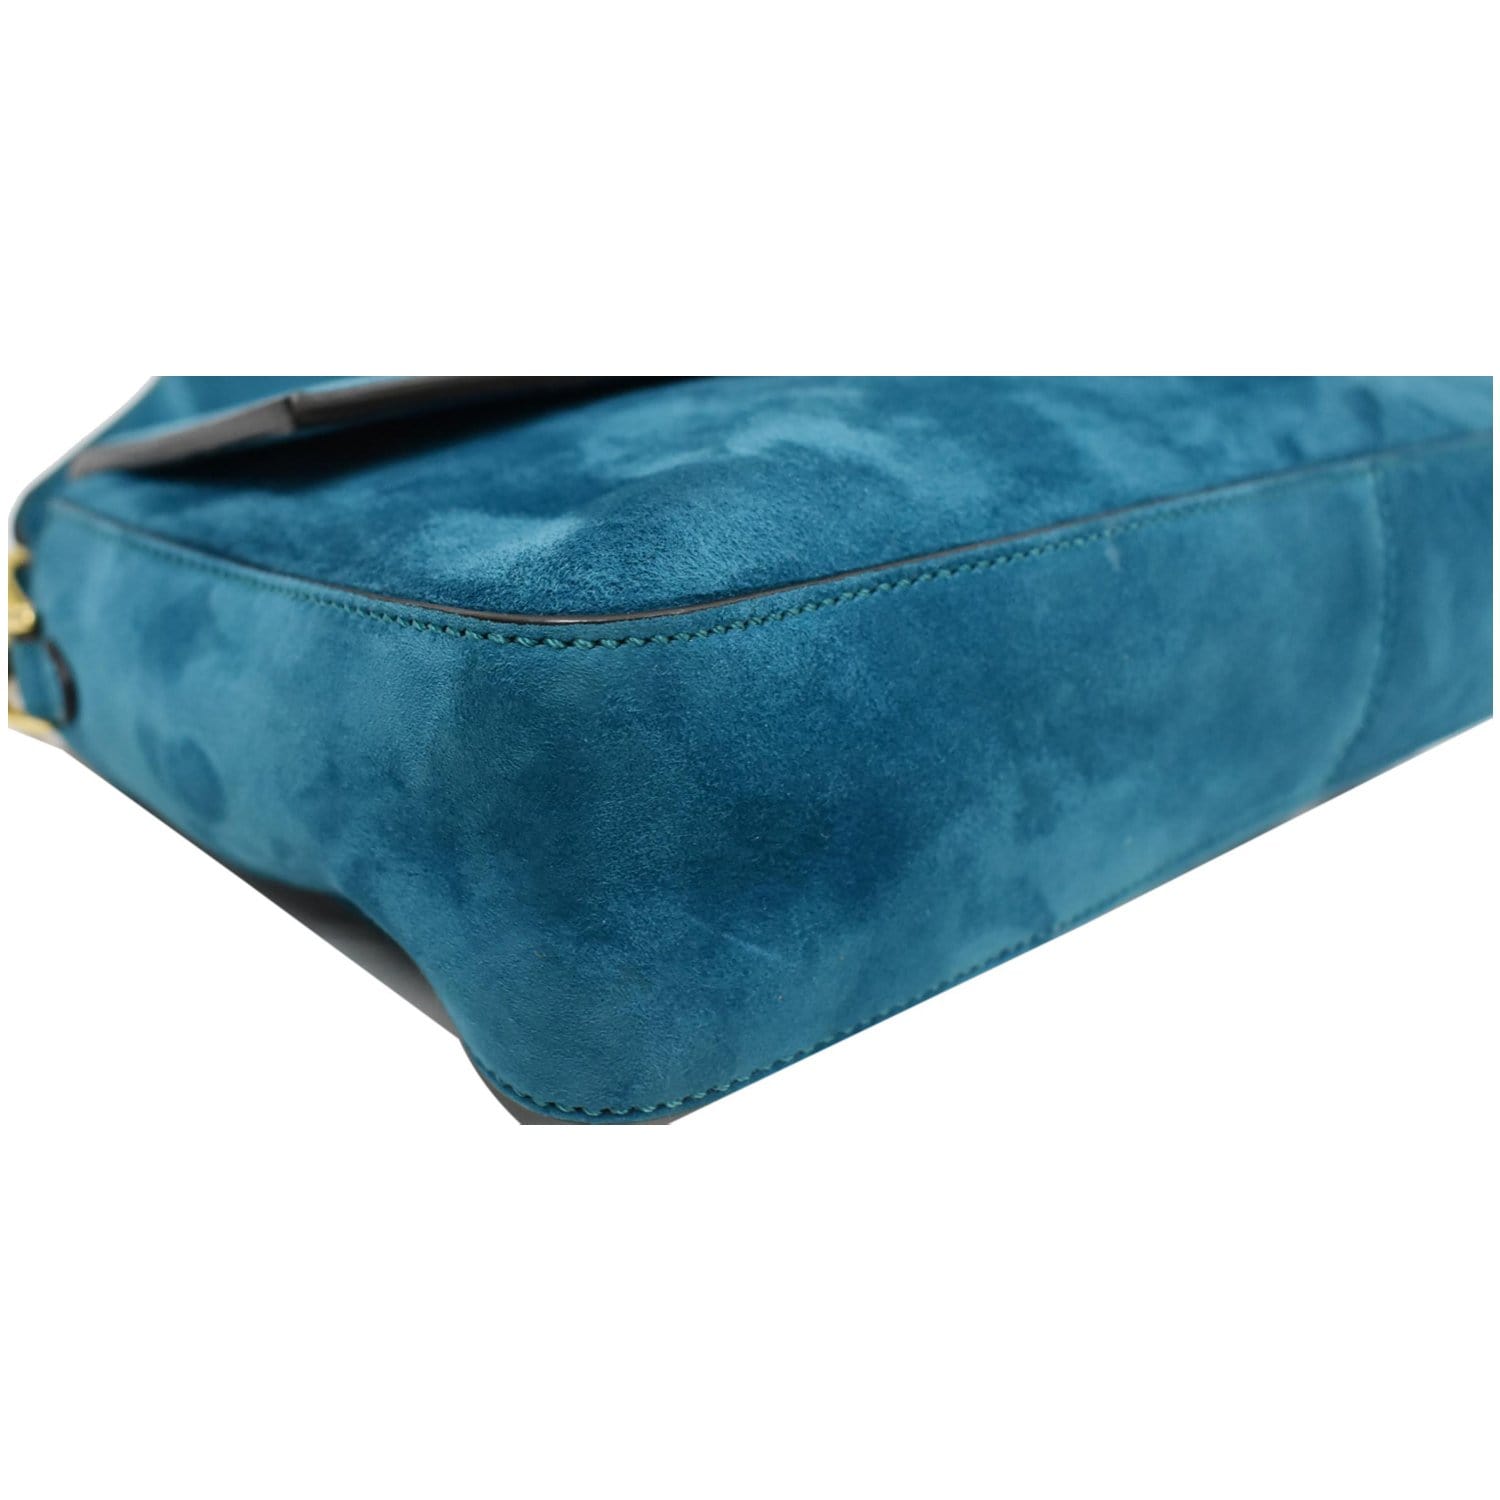 Fendi Suede Handbag Blue